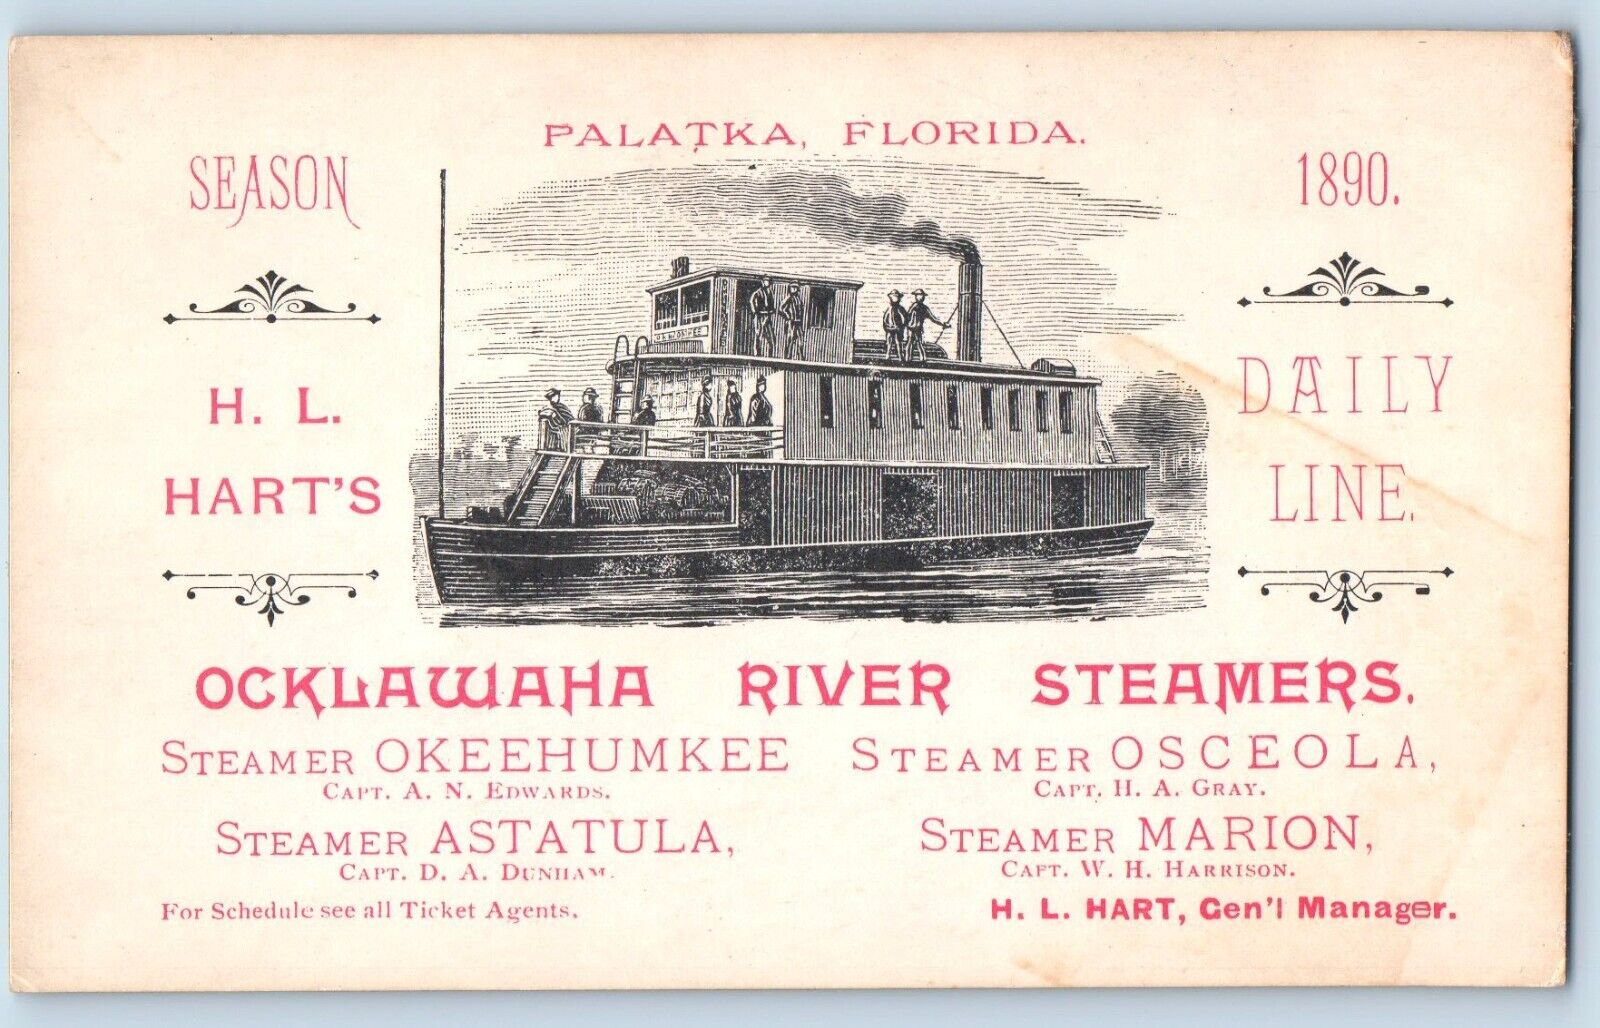 Palatka Florida FL Postcard Ocklawaha River Steamers H L Harts Line Vintage